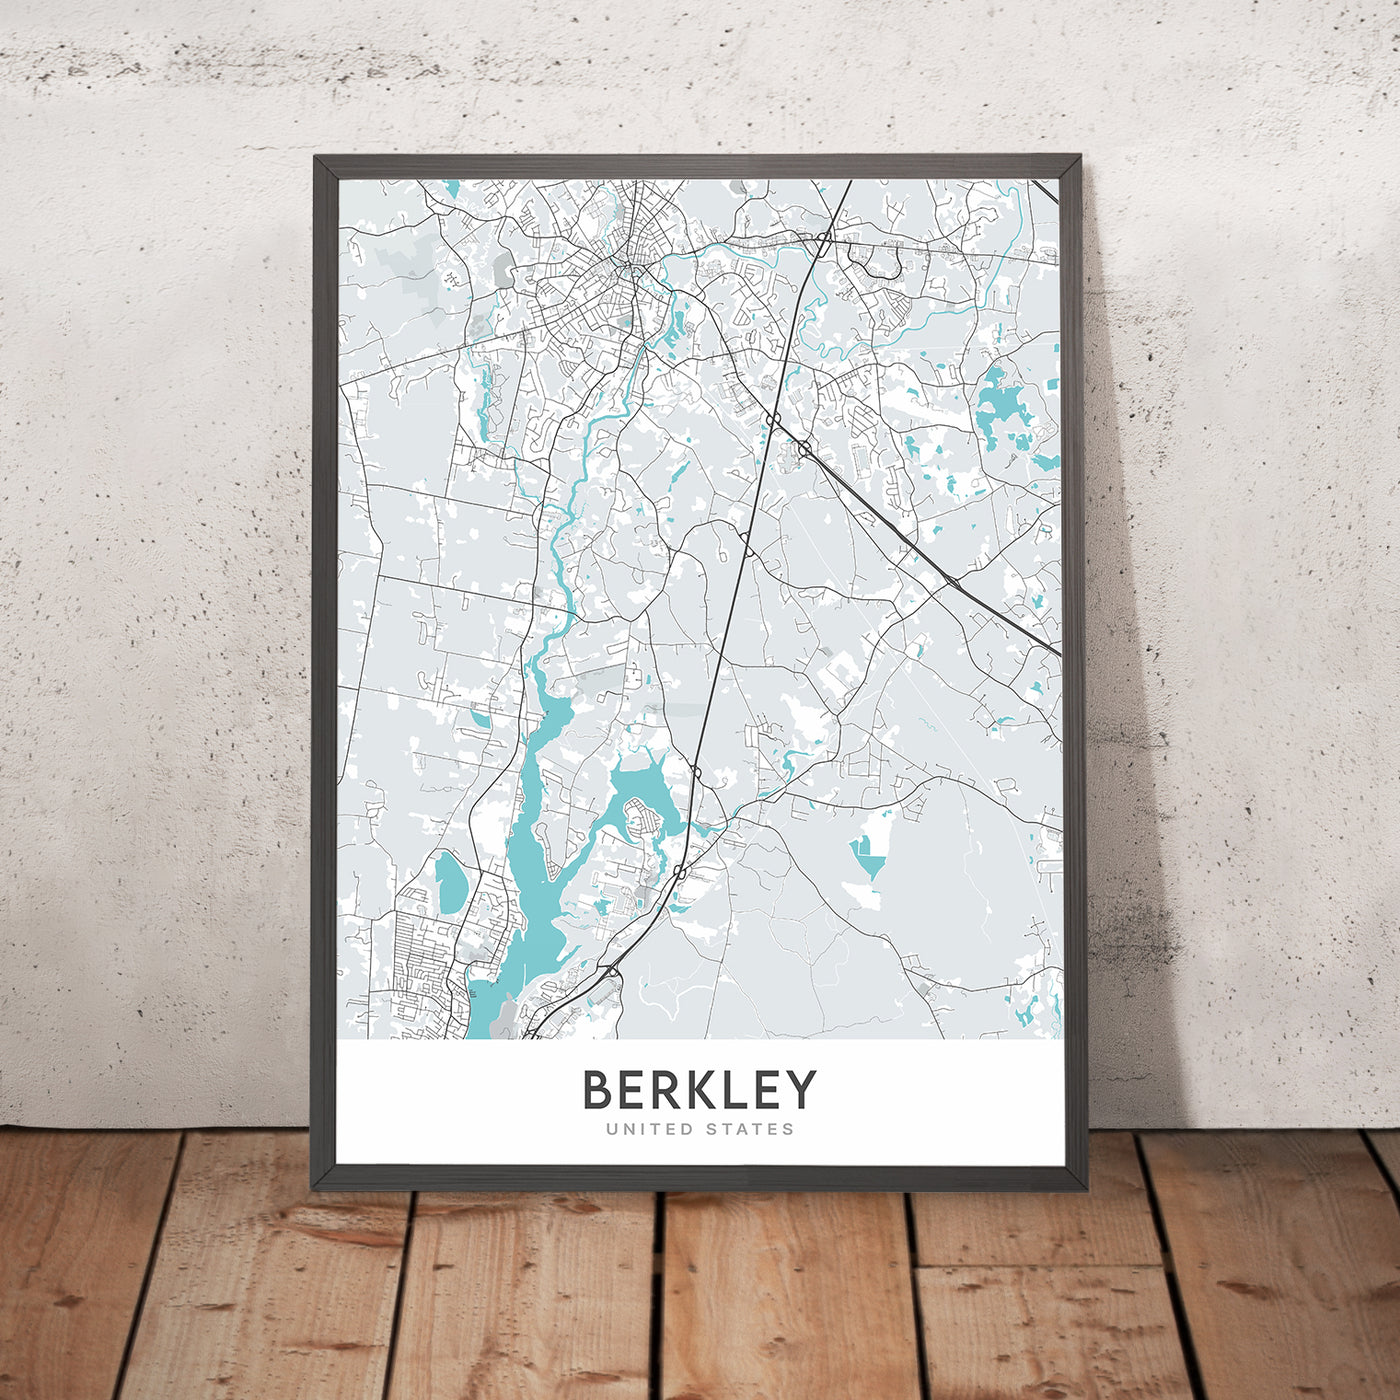 Plan de la ville moderne de Berkley, MA : Berkley Common, parc d'État de Dighton Rock, rivière Taunton, rivière Assonet, zone de conservation de Myricks